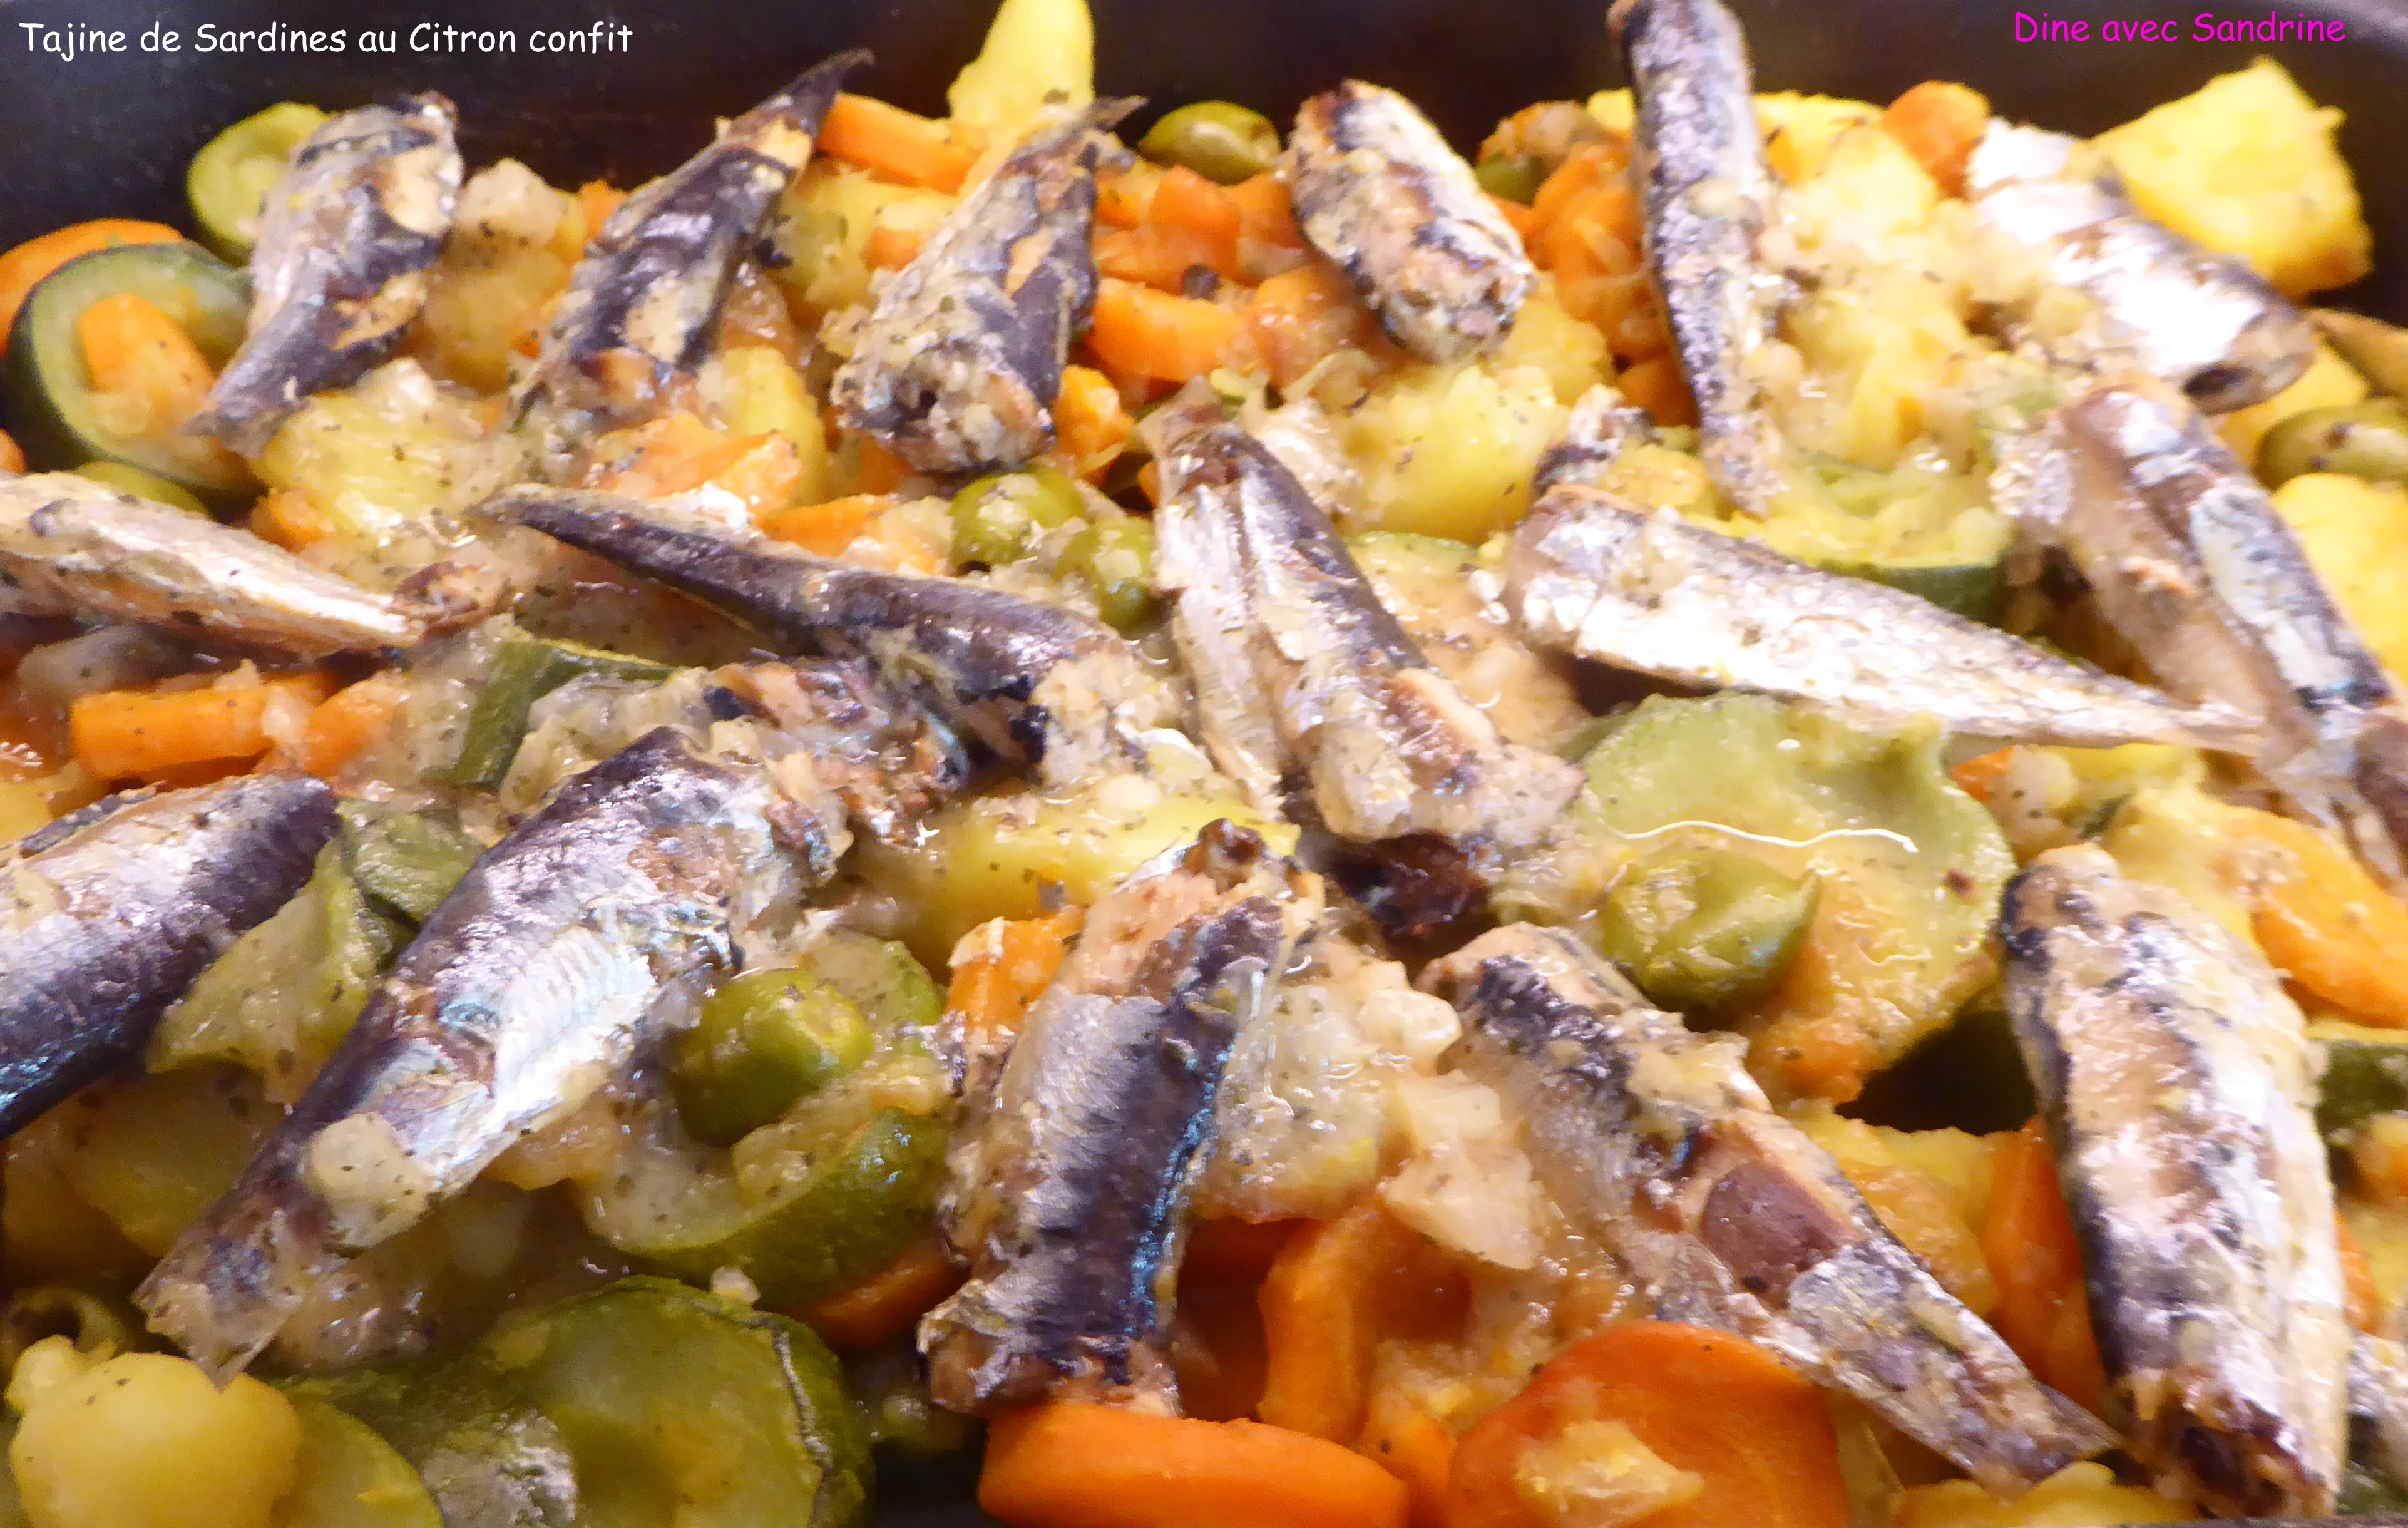 La cuisine du placard : sardines et thon en boîte